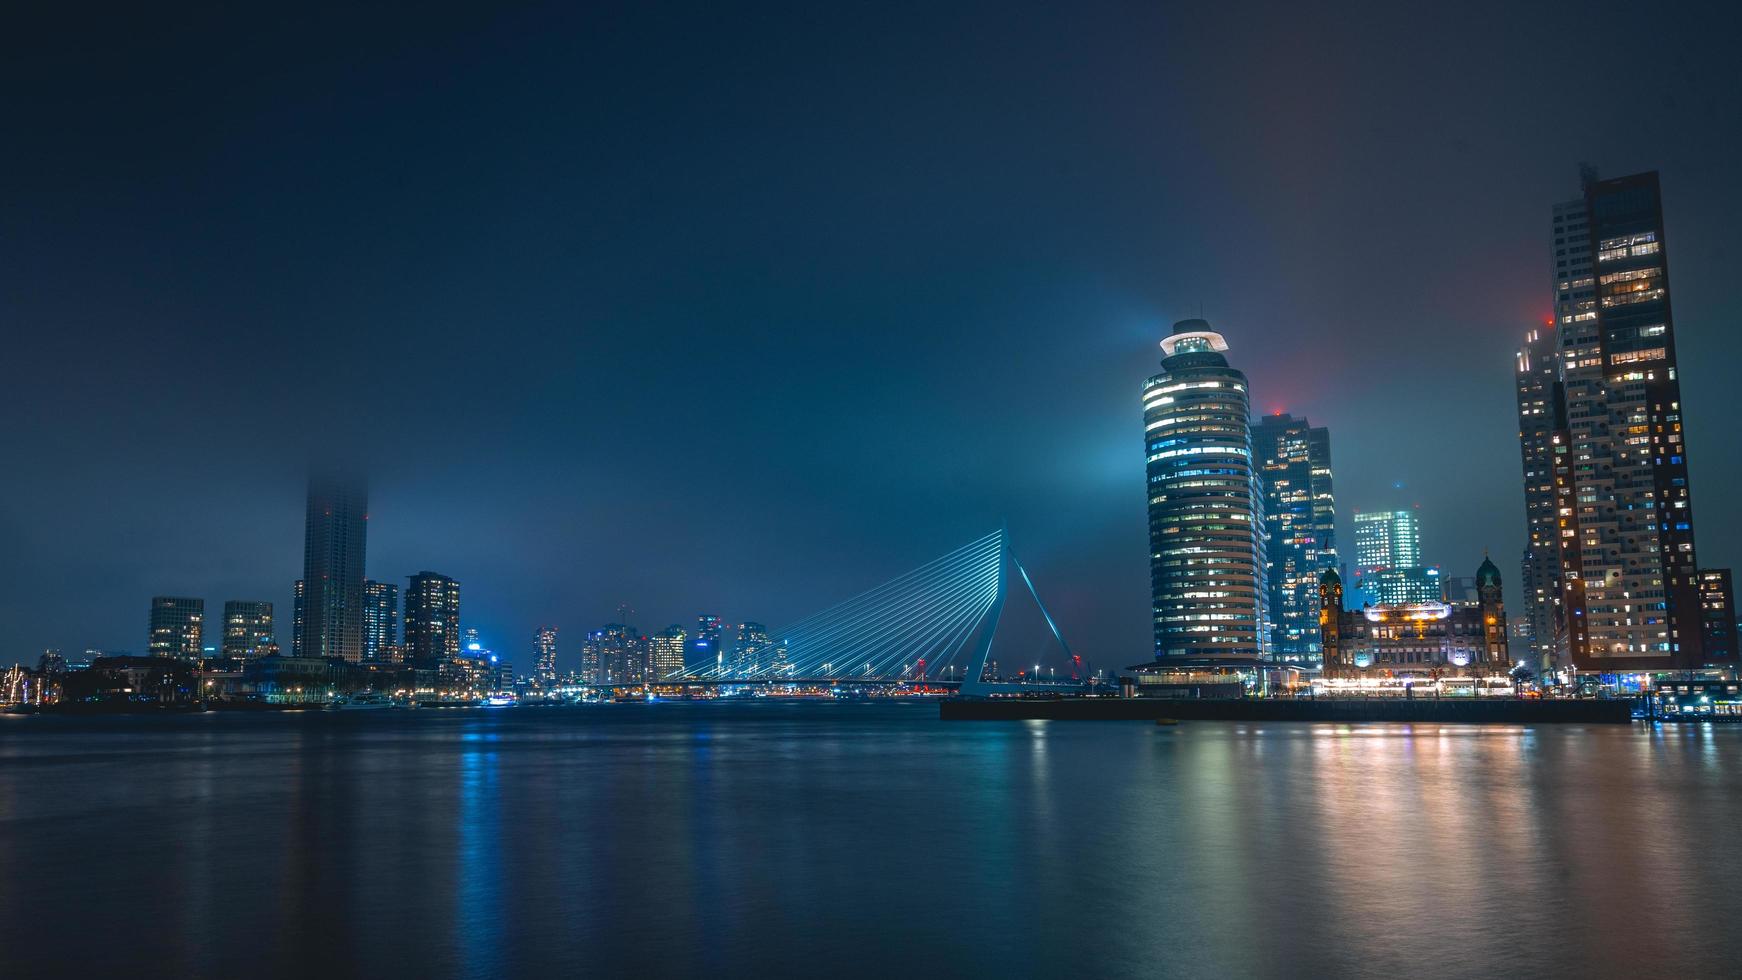 Skyline von Rotterdam am 11. Januar 2022. foto